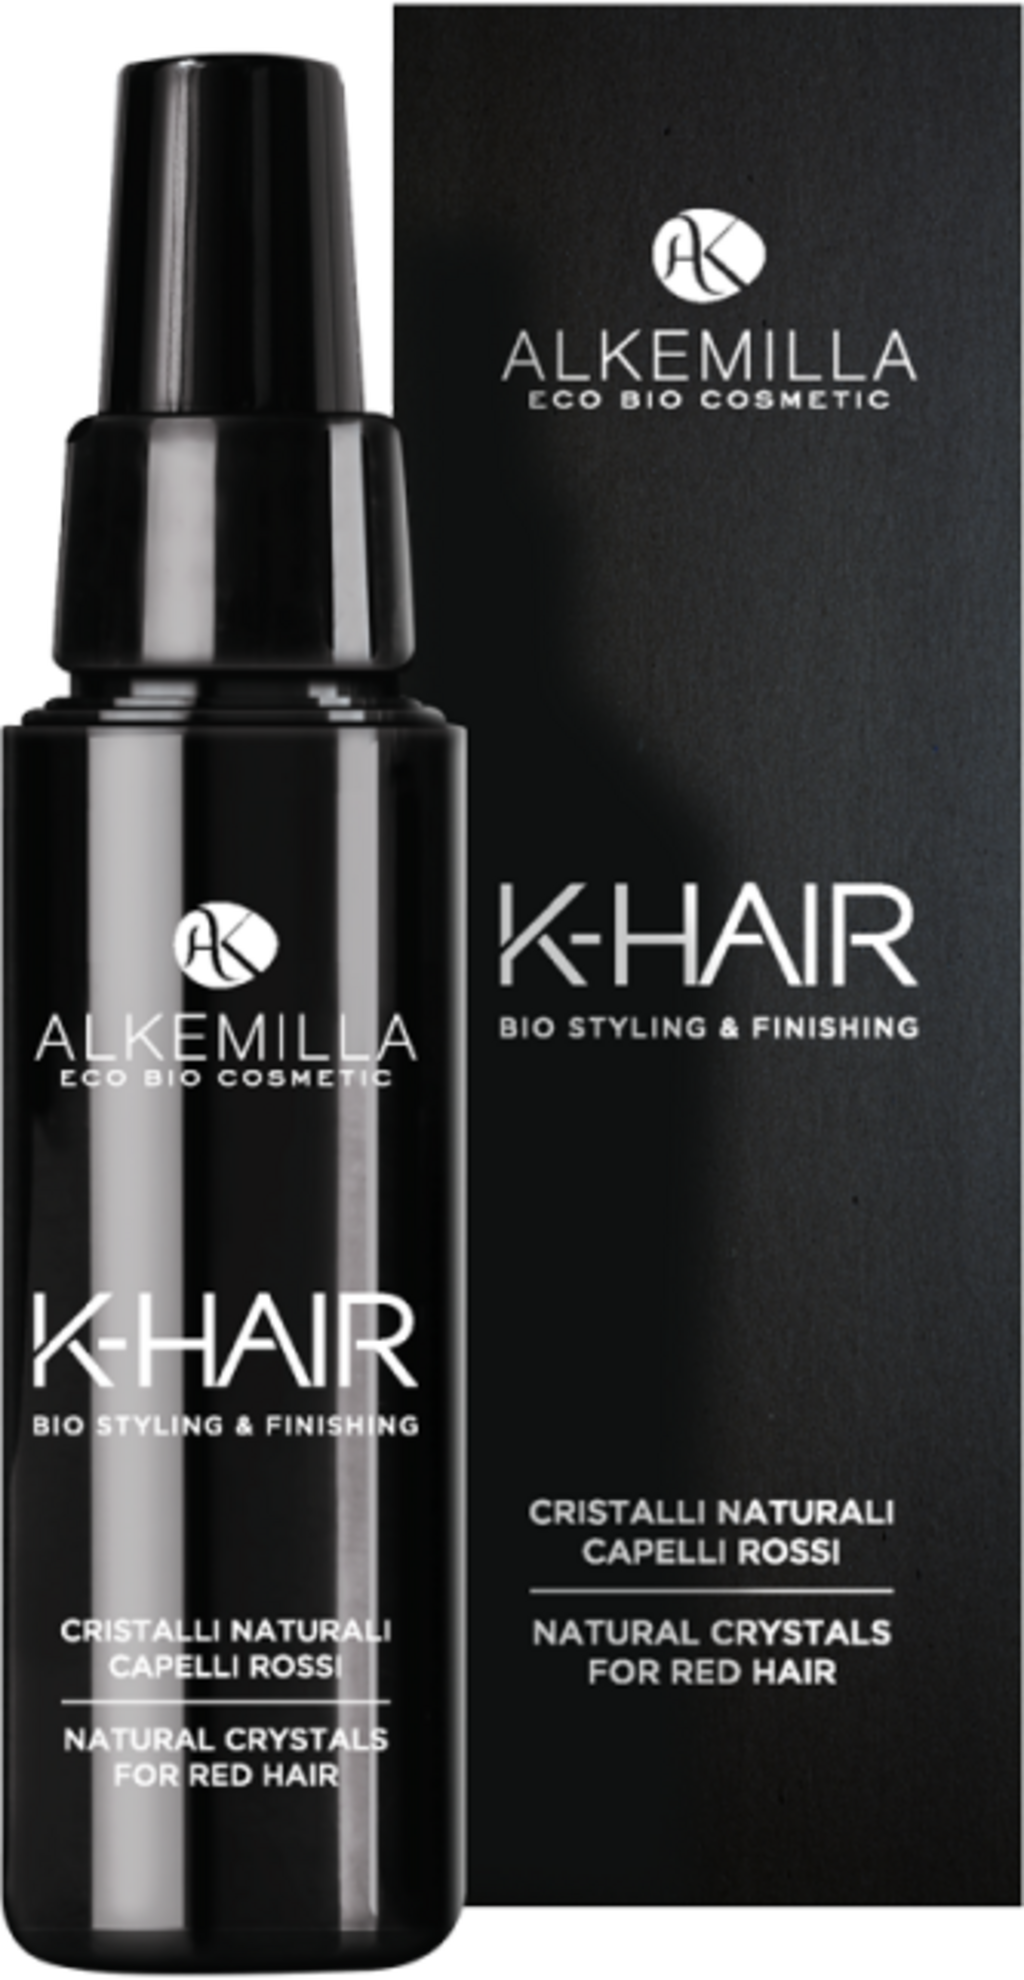 Alkemilla Eco Bio Cosmetic K-HAIR Cristalli Naturali per Capelli - Capelli rossi